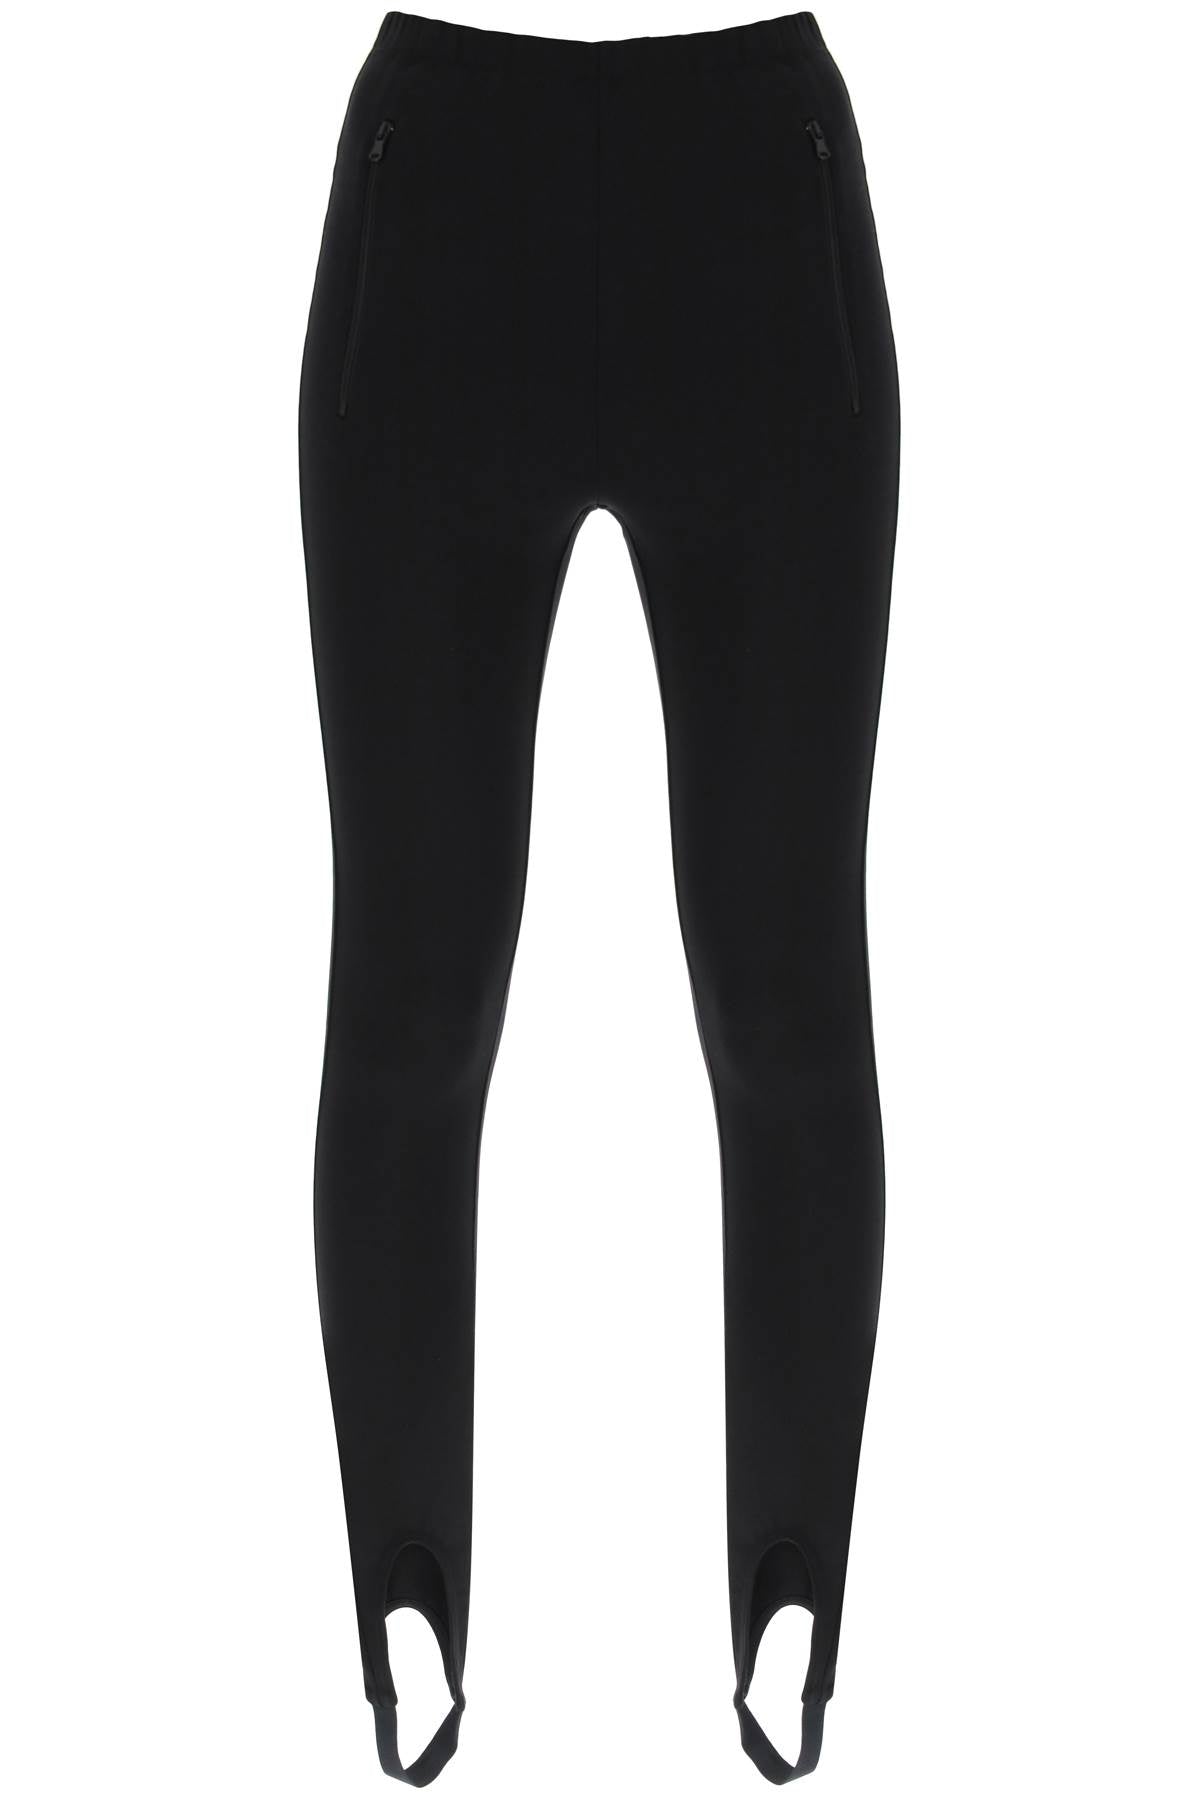 Wardrobe.nyc high-waisted stirrup leggings W2035R06 BLACK